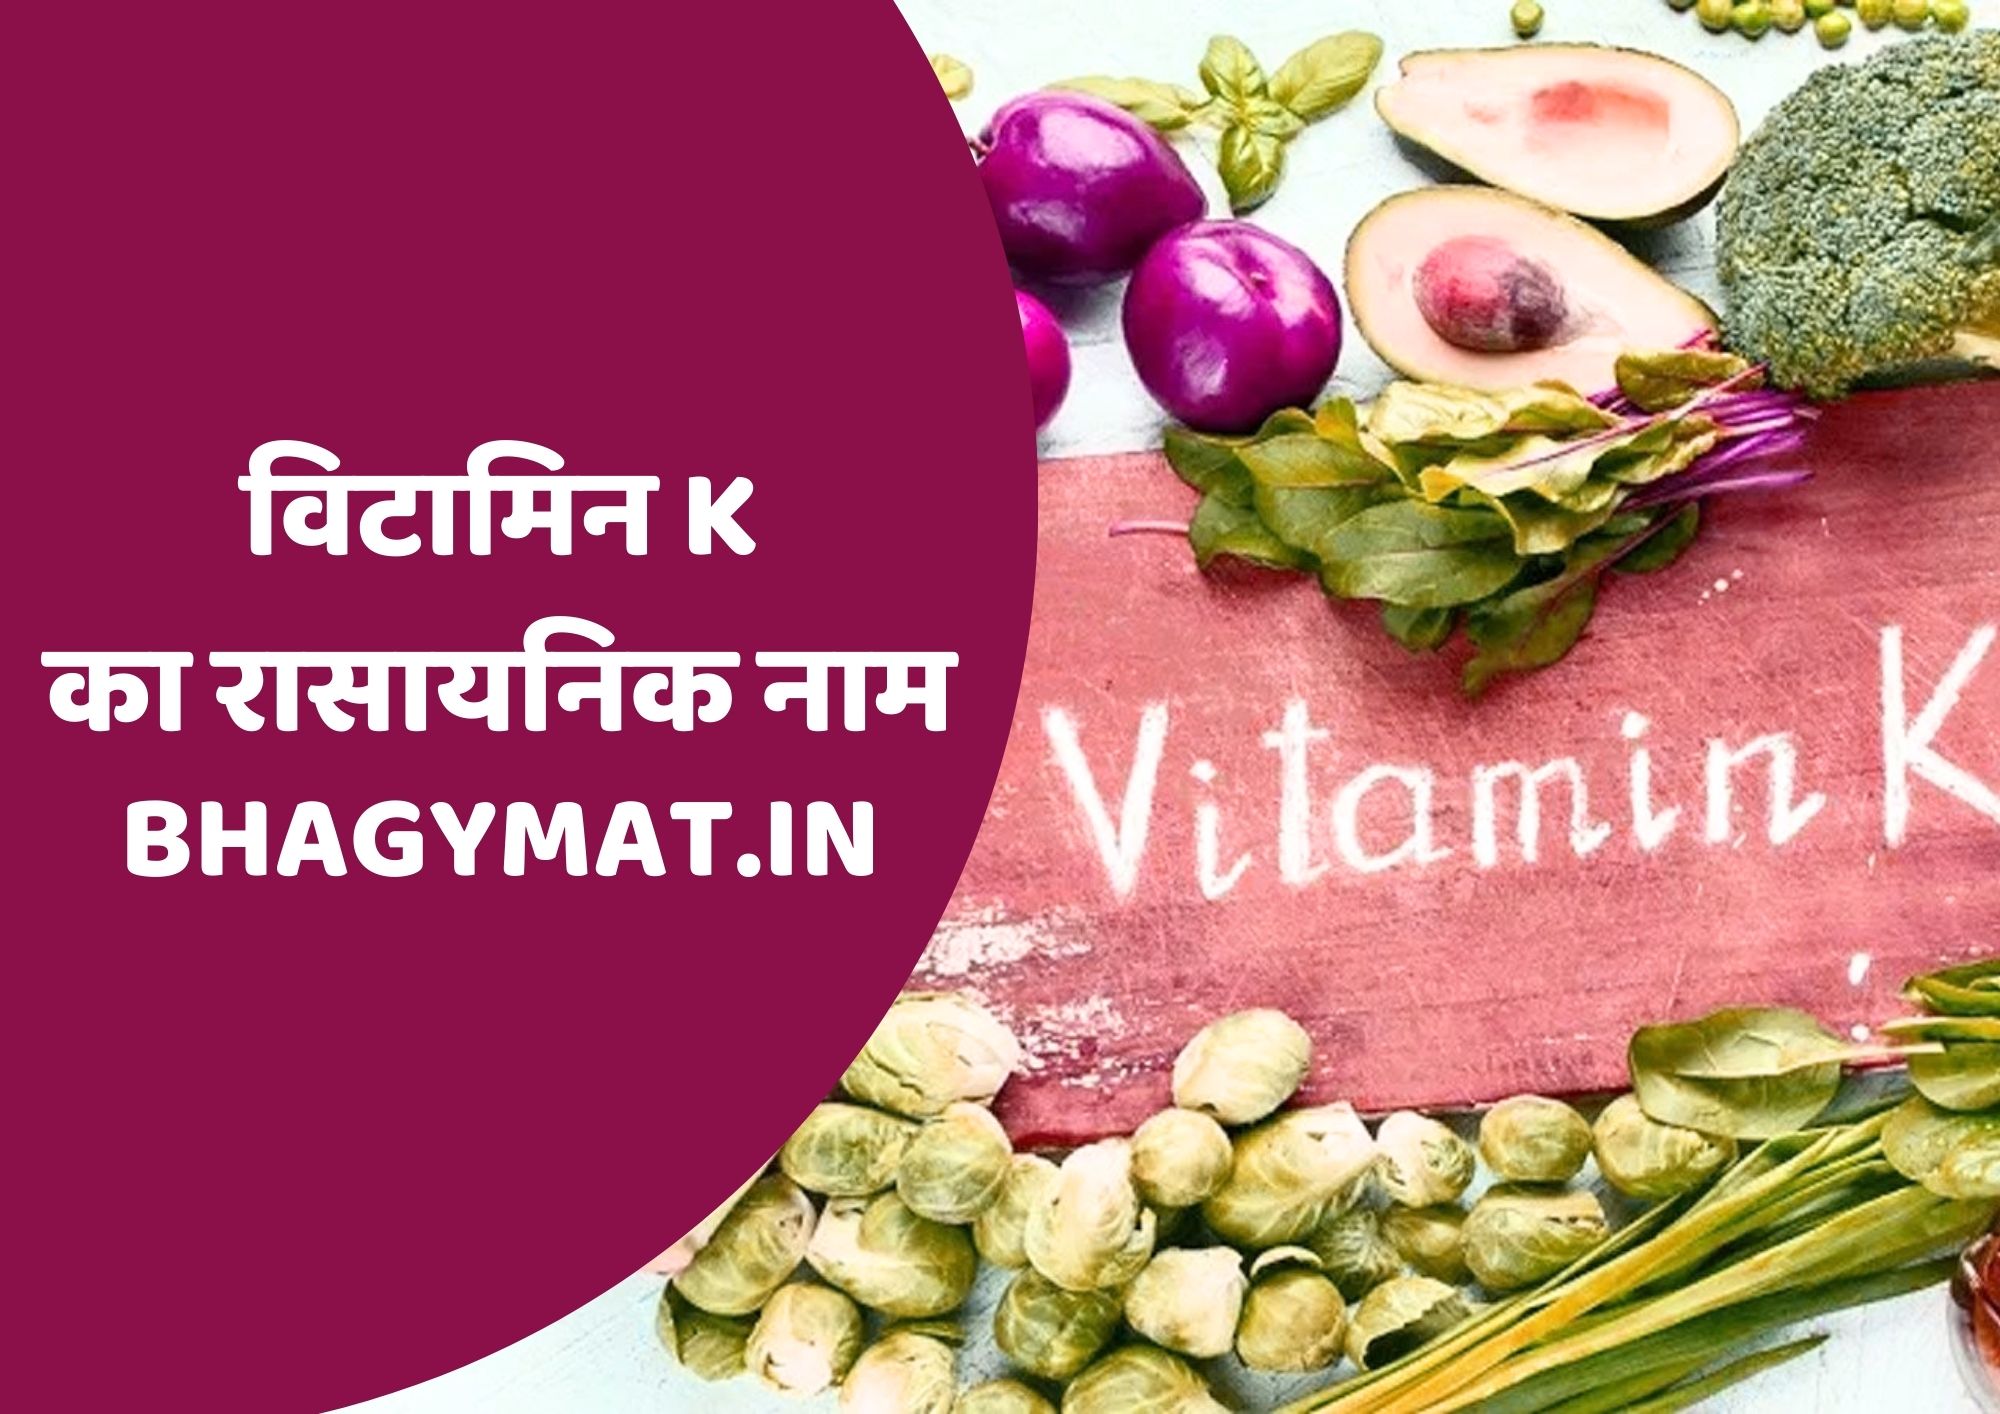 विटामिन के का रासायनिक नाम क्या है (Vitamin K Chemical Name In Hindi) - Vitamin K Ka Rasayanik Naam Kya Hai